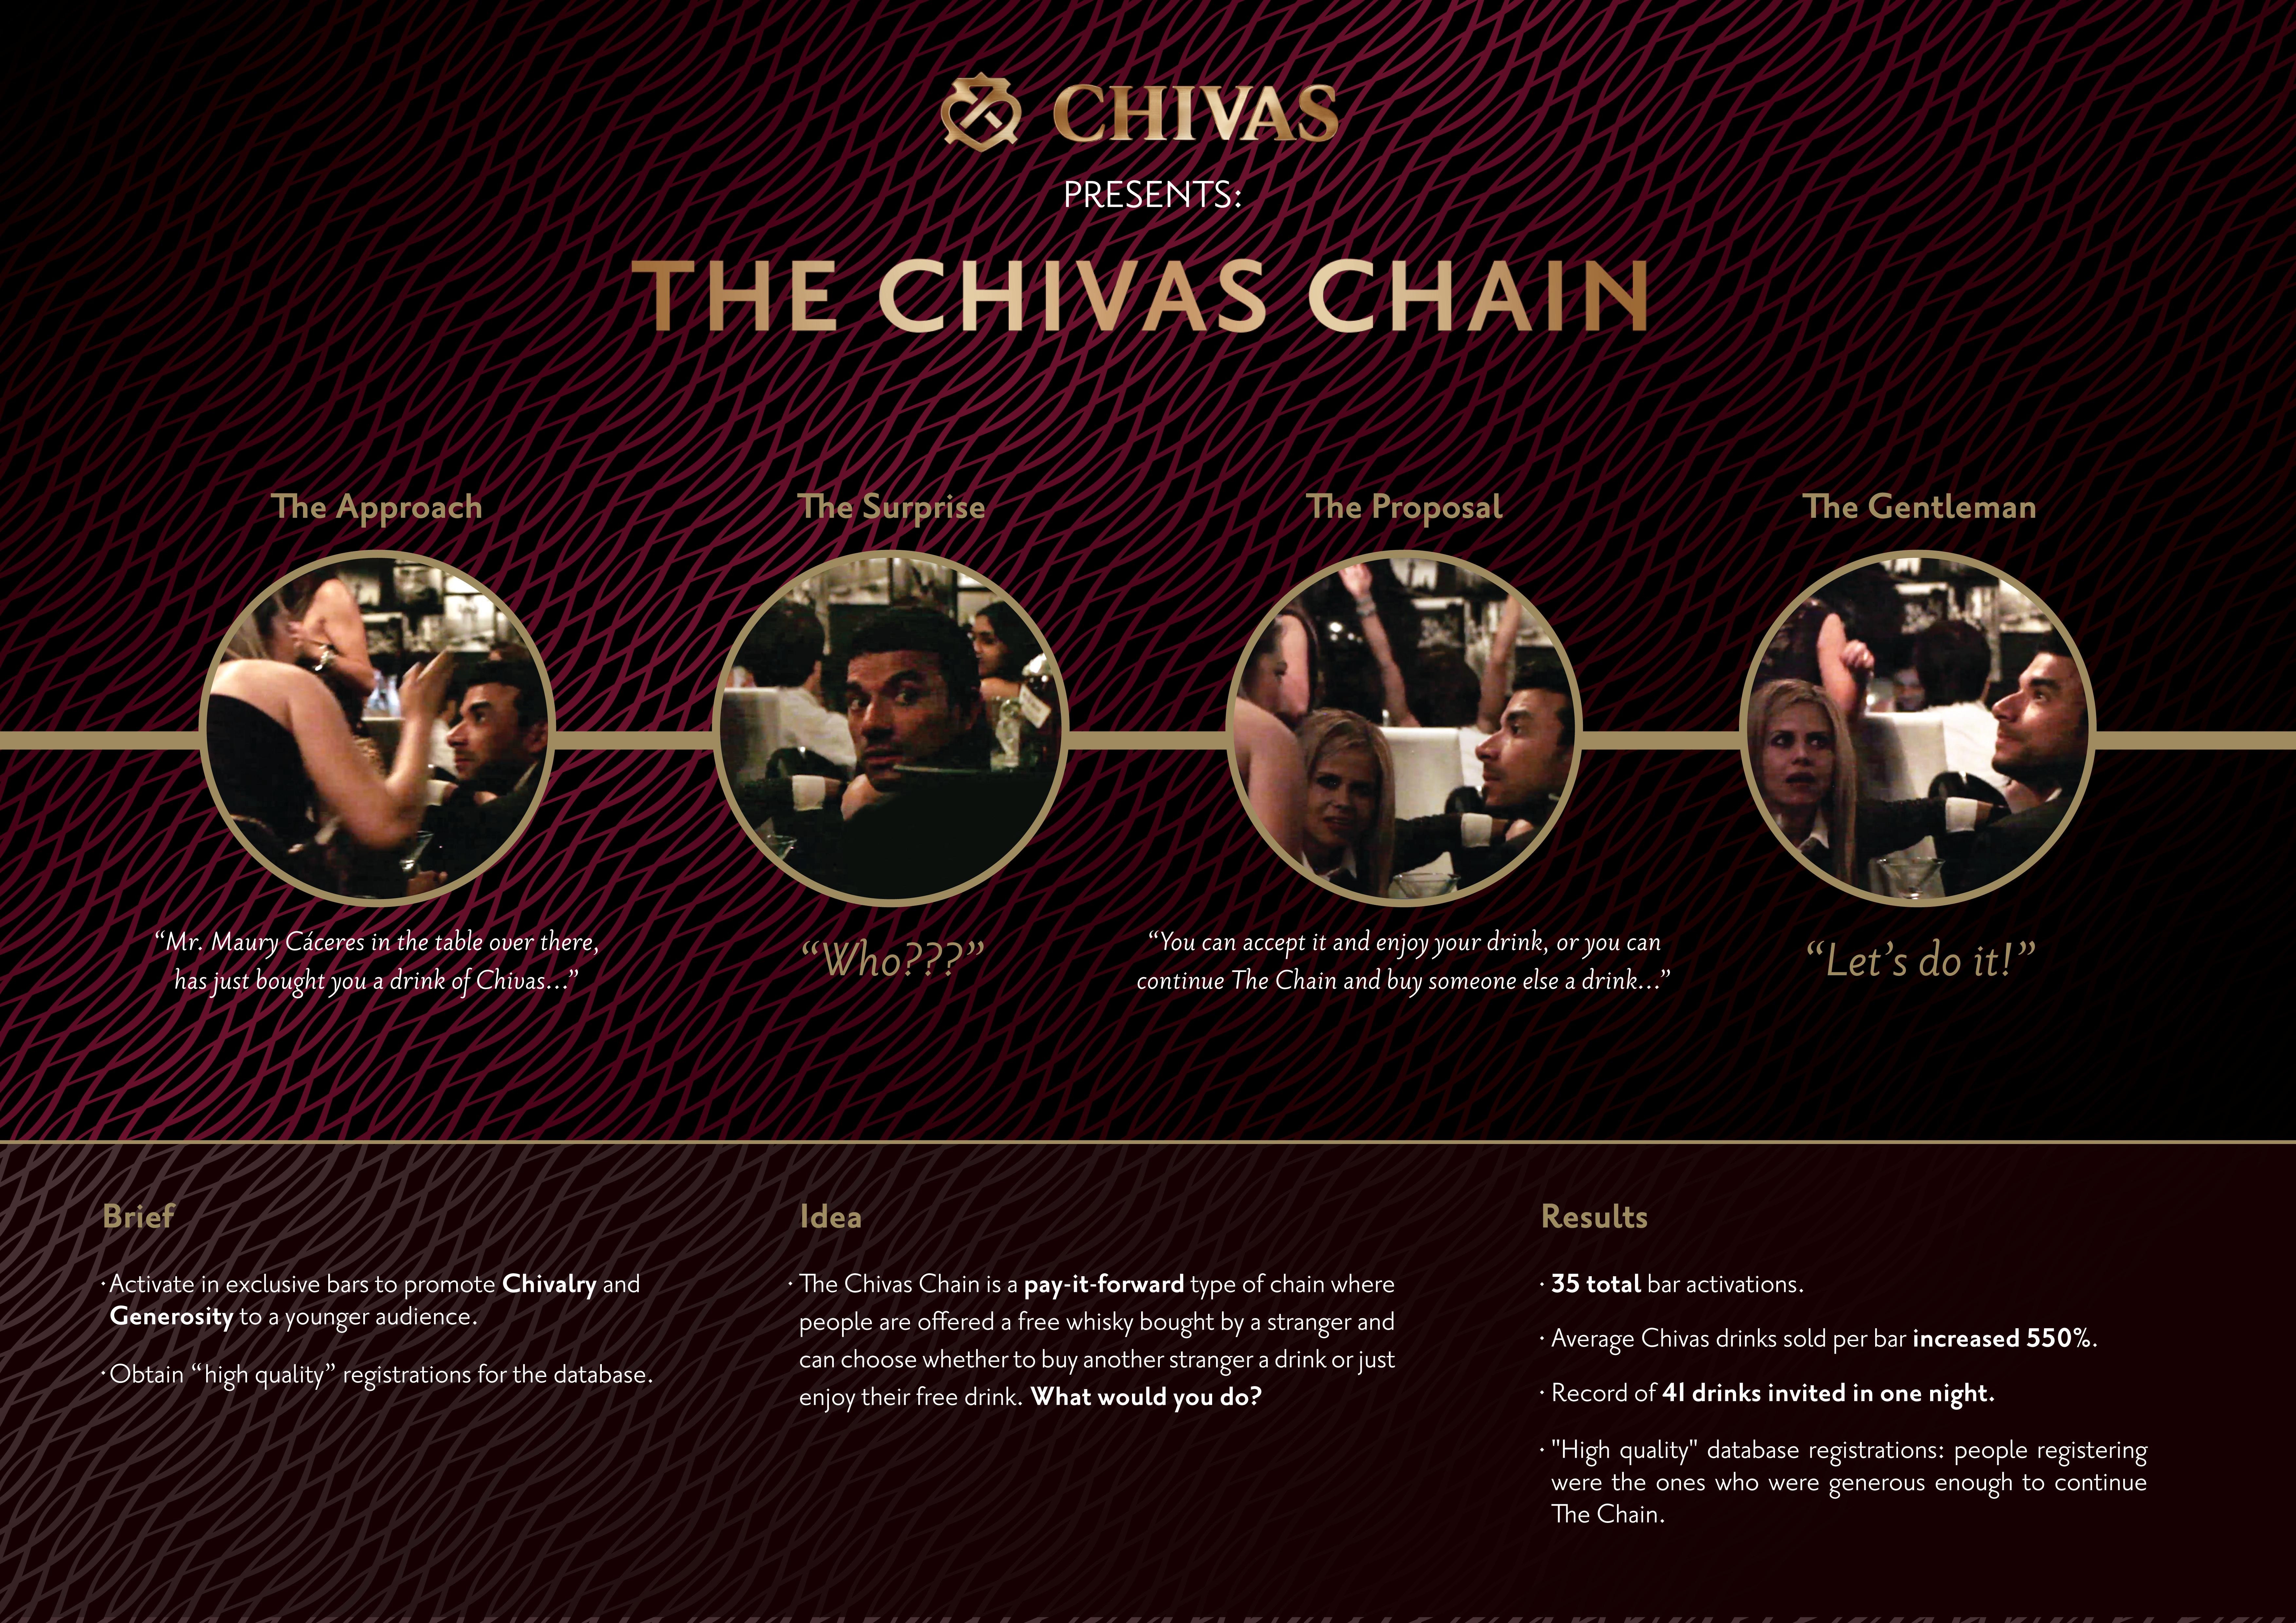 THE CHIVAS CHAIN